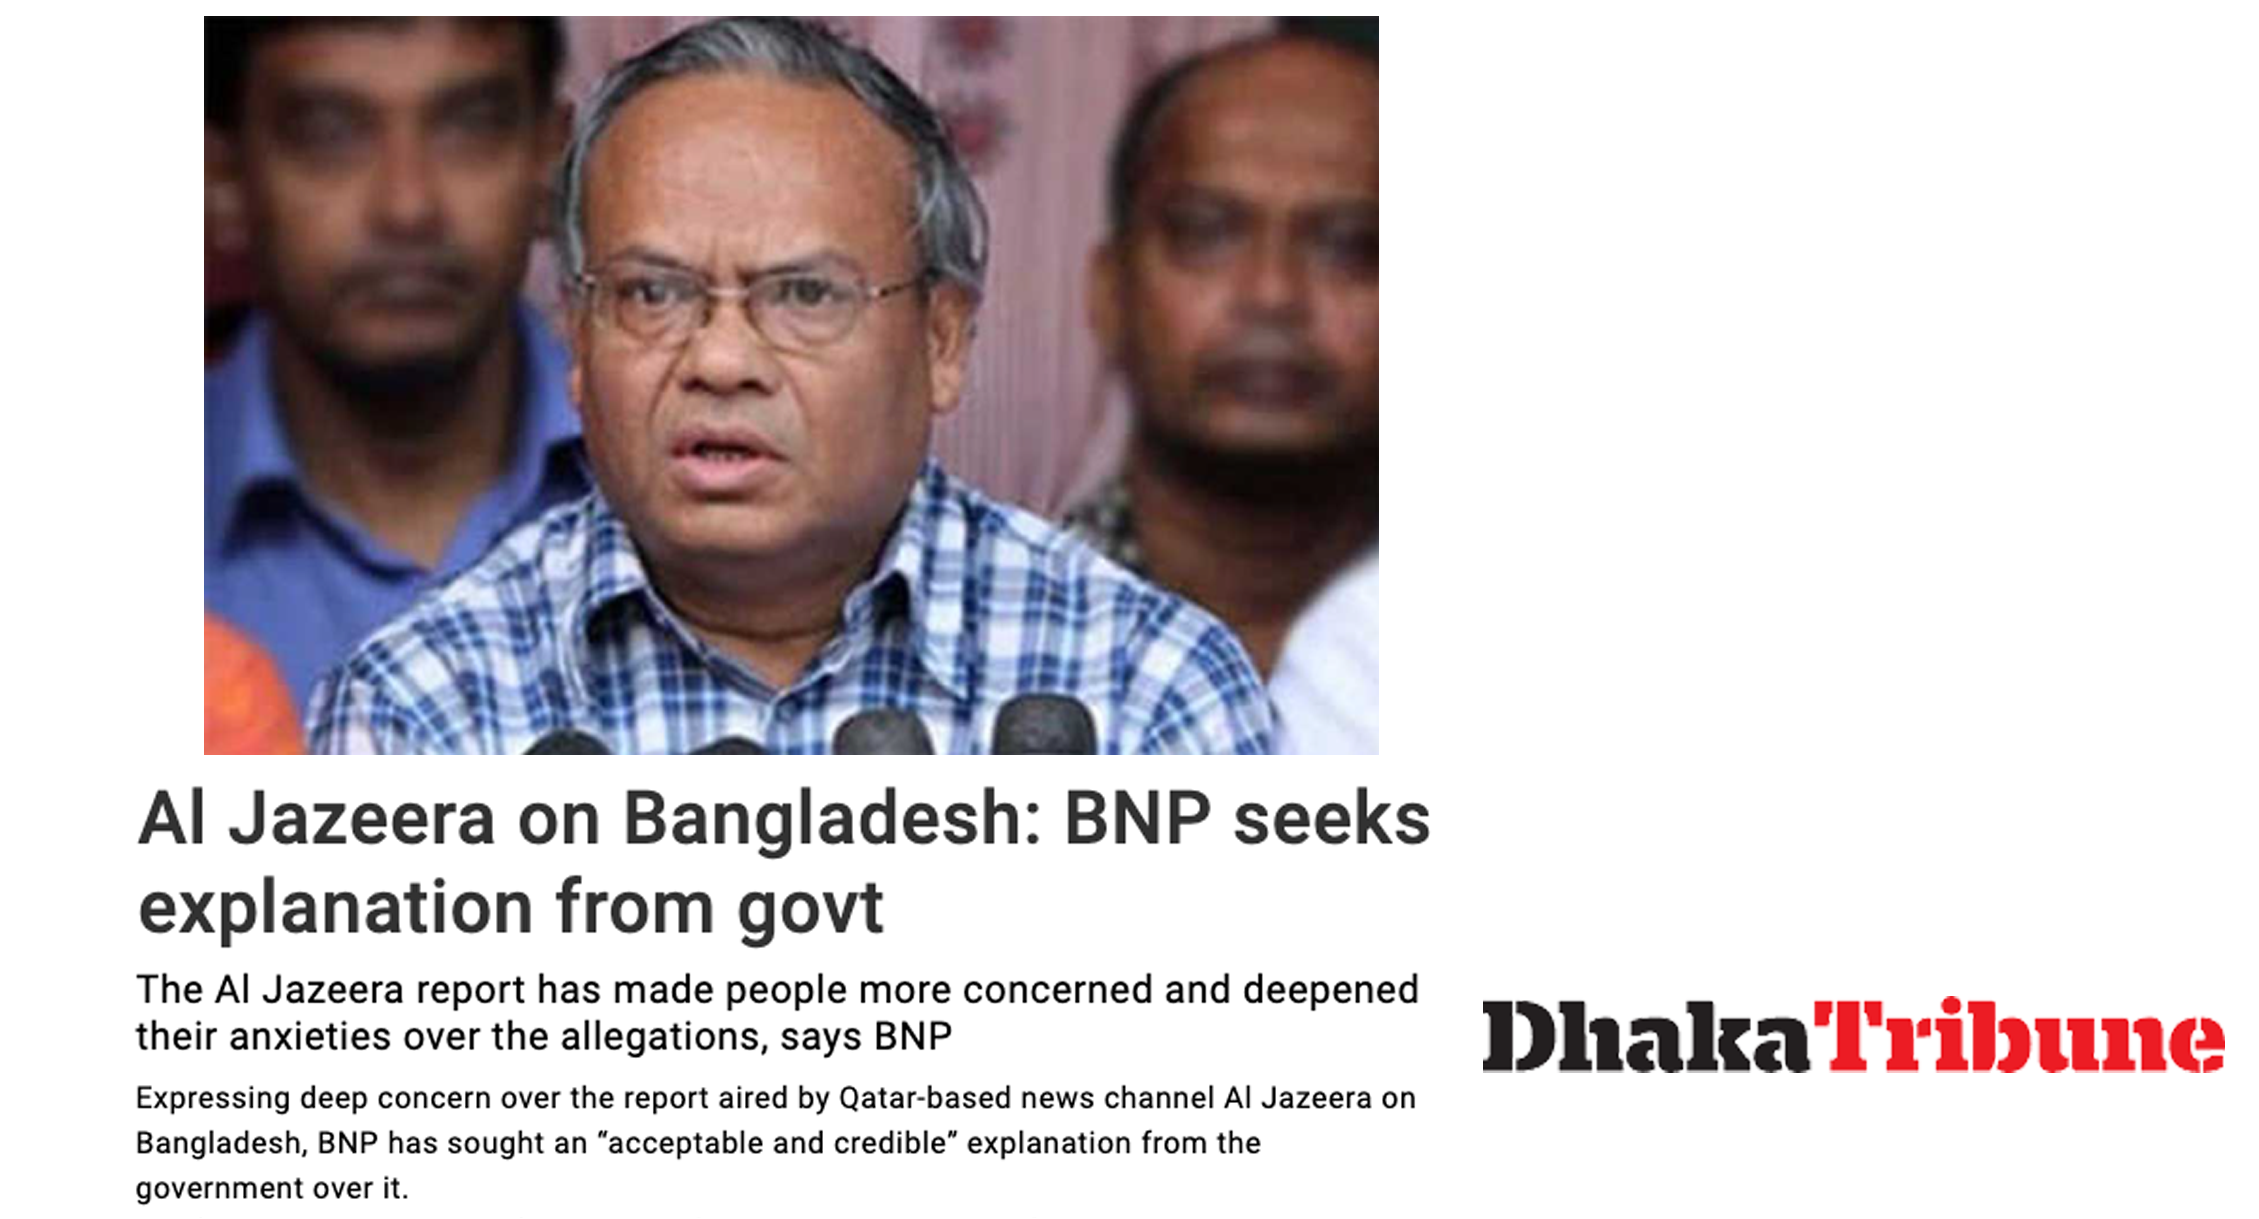 BNP seeks explanation from govt